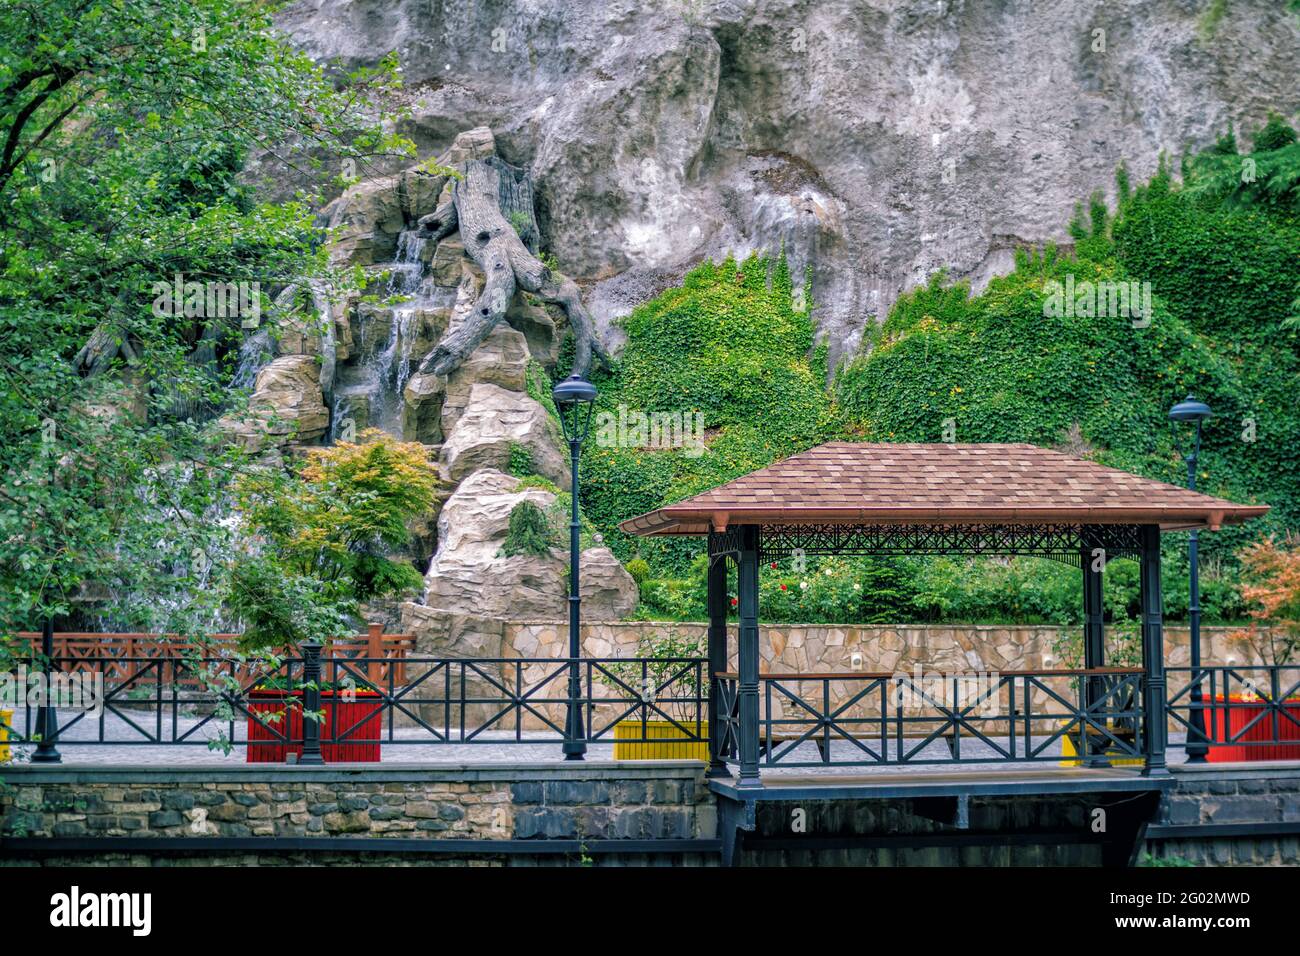 Sommerlandschaft - schöner Park - grün bewachsener Efeu bedeckt Bergsteinoberfläche, künstlichen Wasserfall und Gartenlaube. Stockfoto